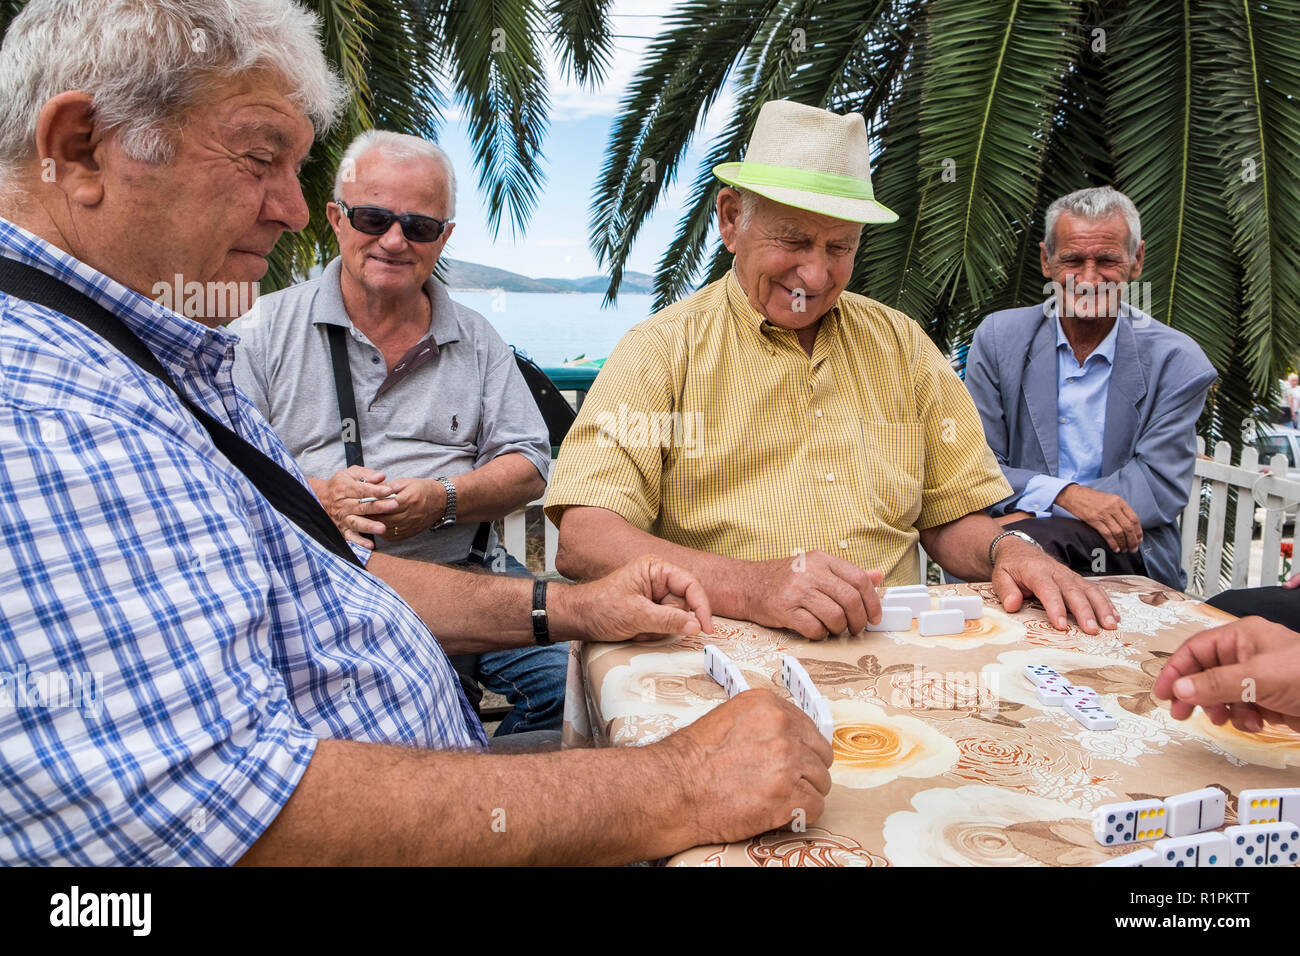 L'Albanie, Tirana, personnes âgées jouer aux dominos Banque D'Images